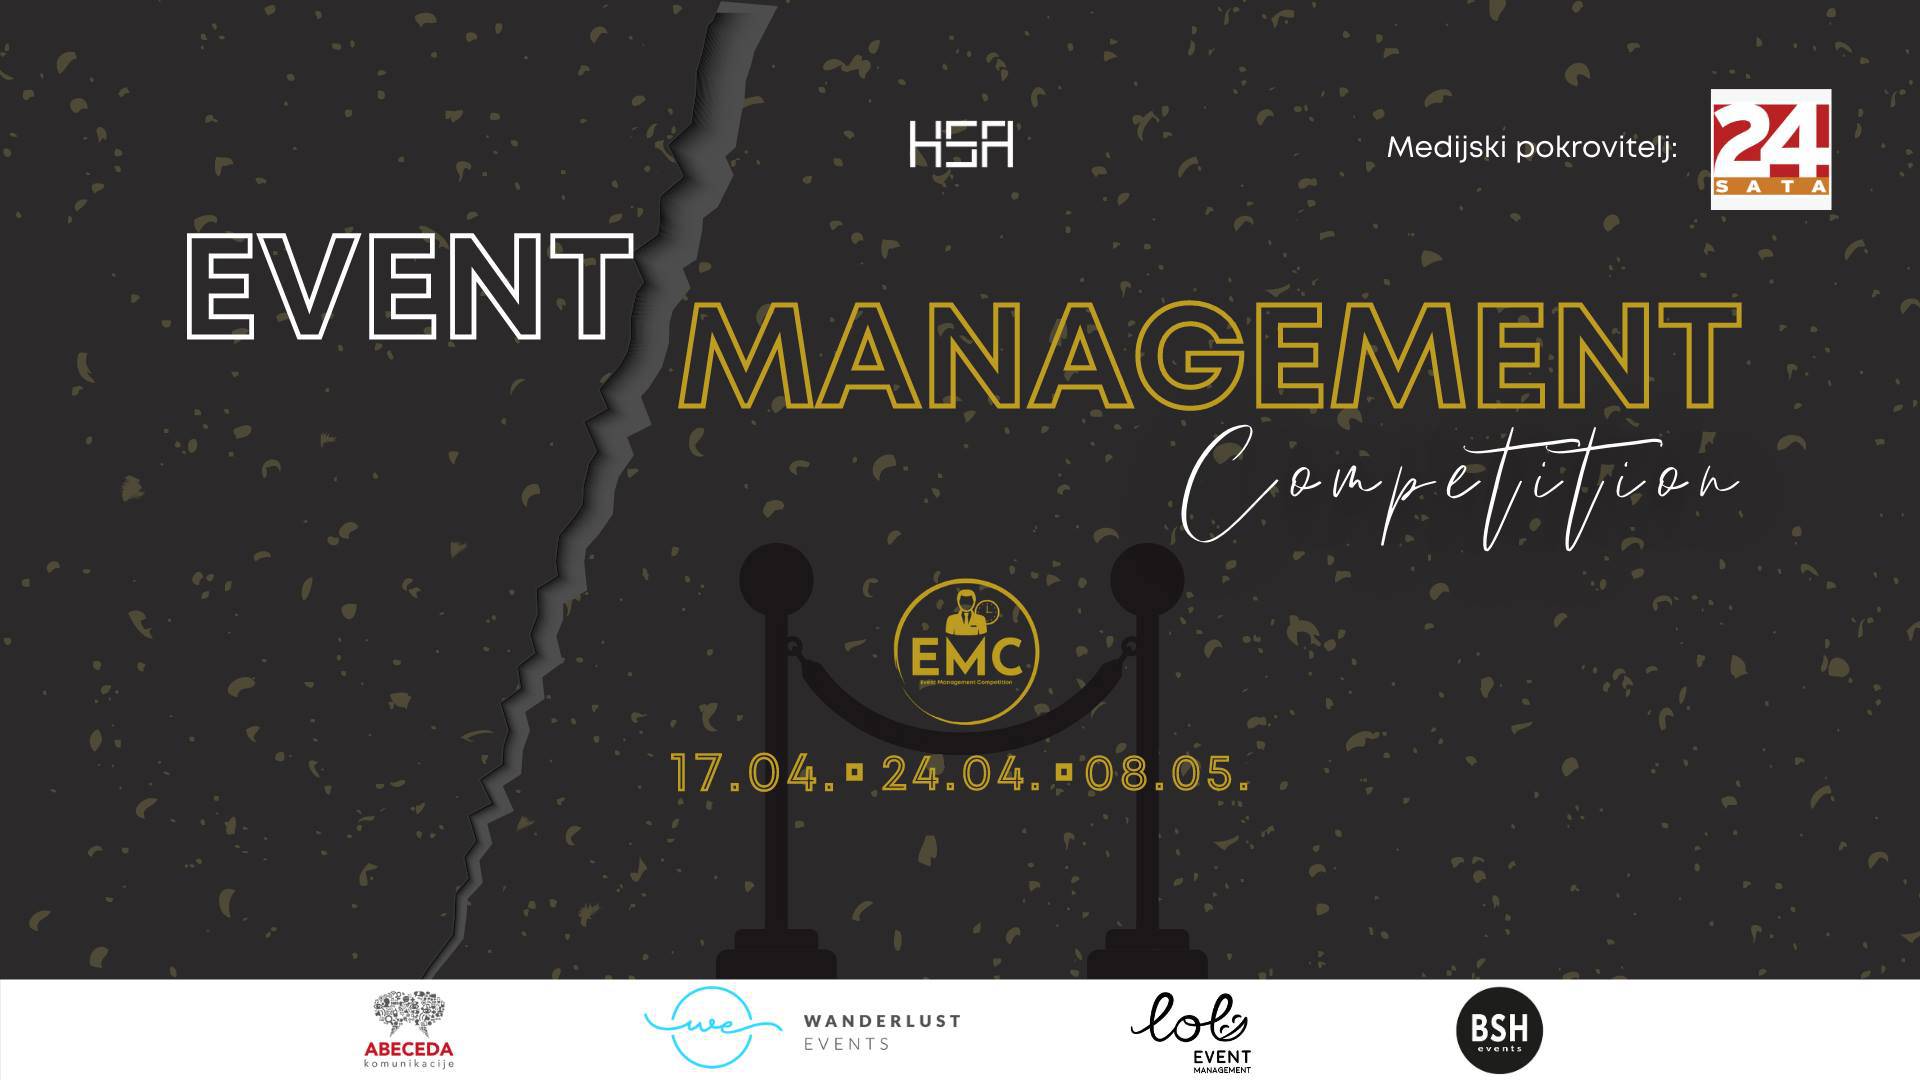 Održano zanimljivo natjecanje i radionica event managementa!